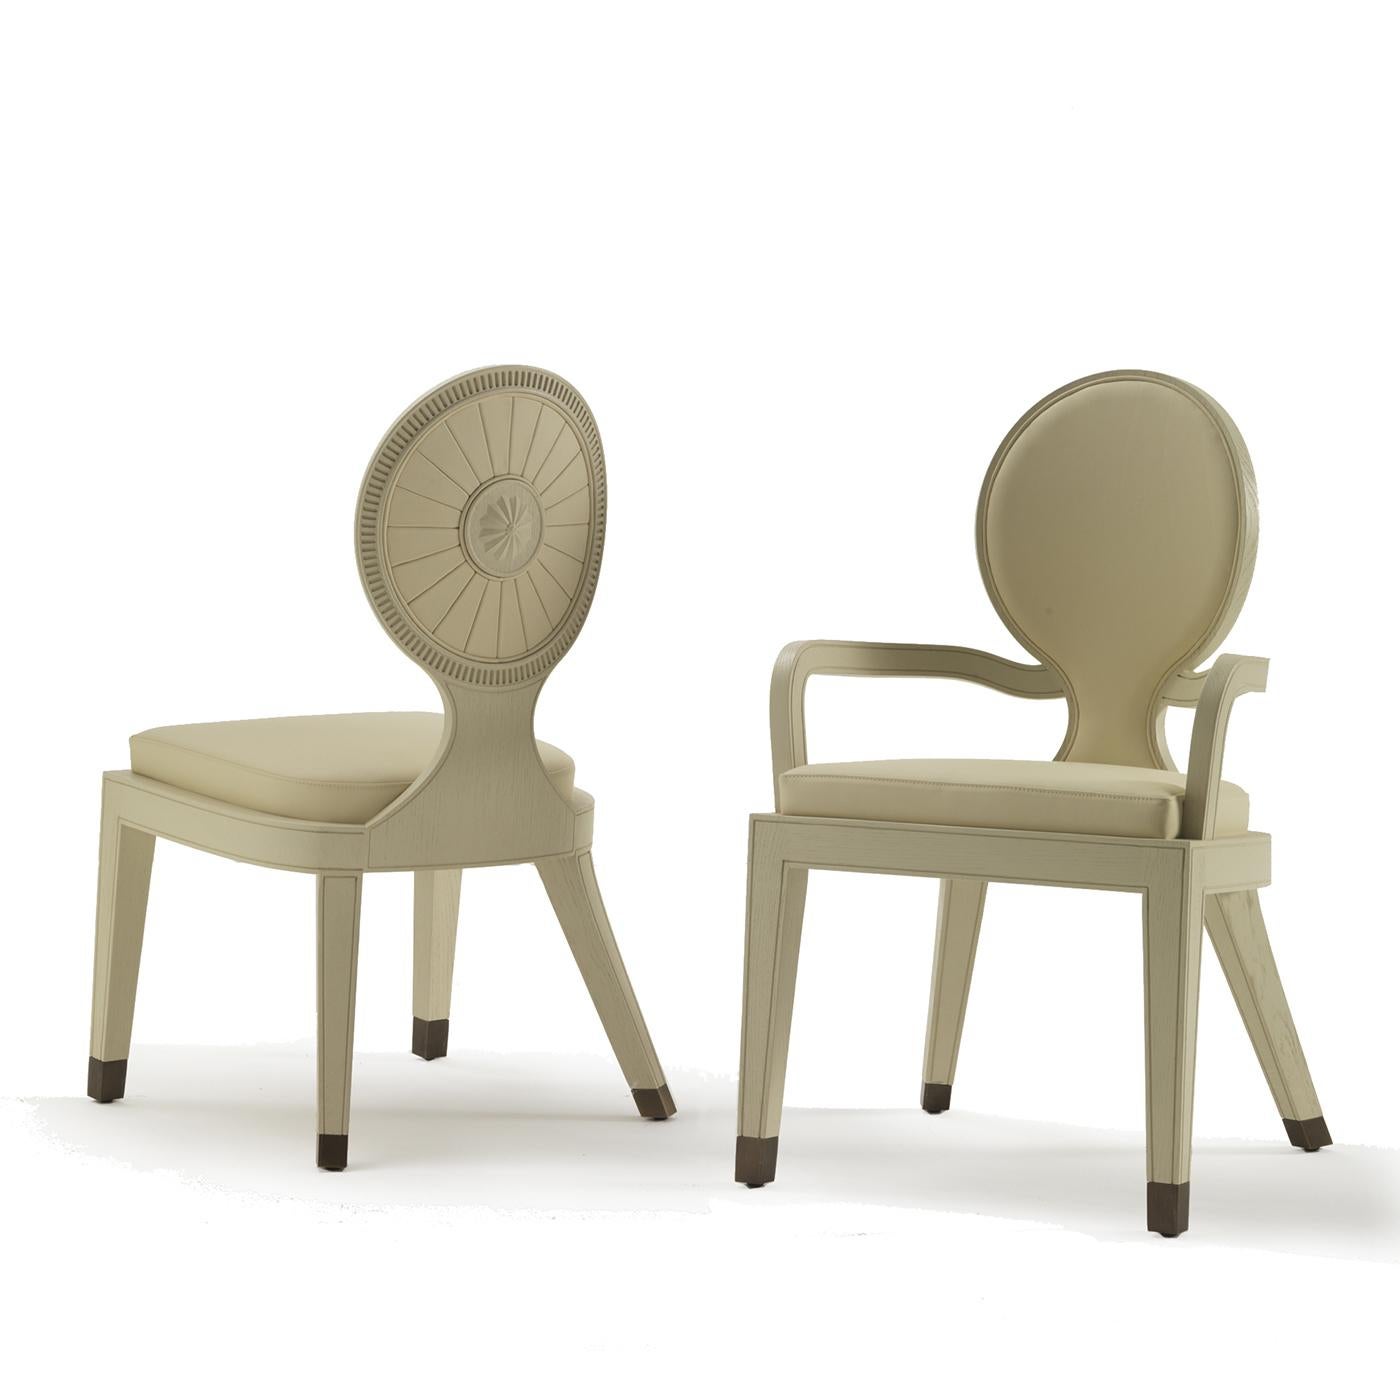 Dieser atemberaubende Stuhl ist ein hervorragendes Beispiel für exquisite Handwerkskunst und moderne Sensibilität. Die von einem traditionellen Design inspirierte Holzstruktur ist in Eiche natur lackiert und bildet einen auffälligen Kontrast zu den